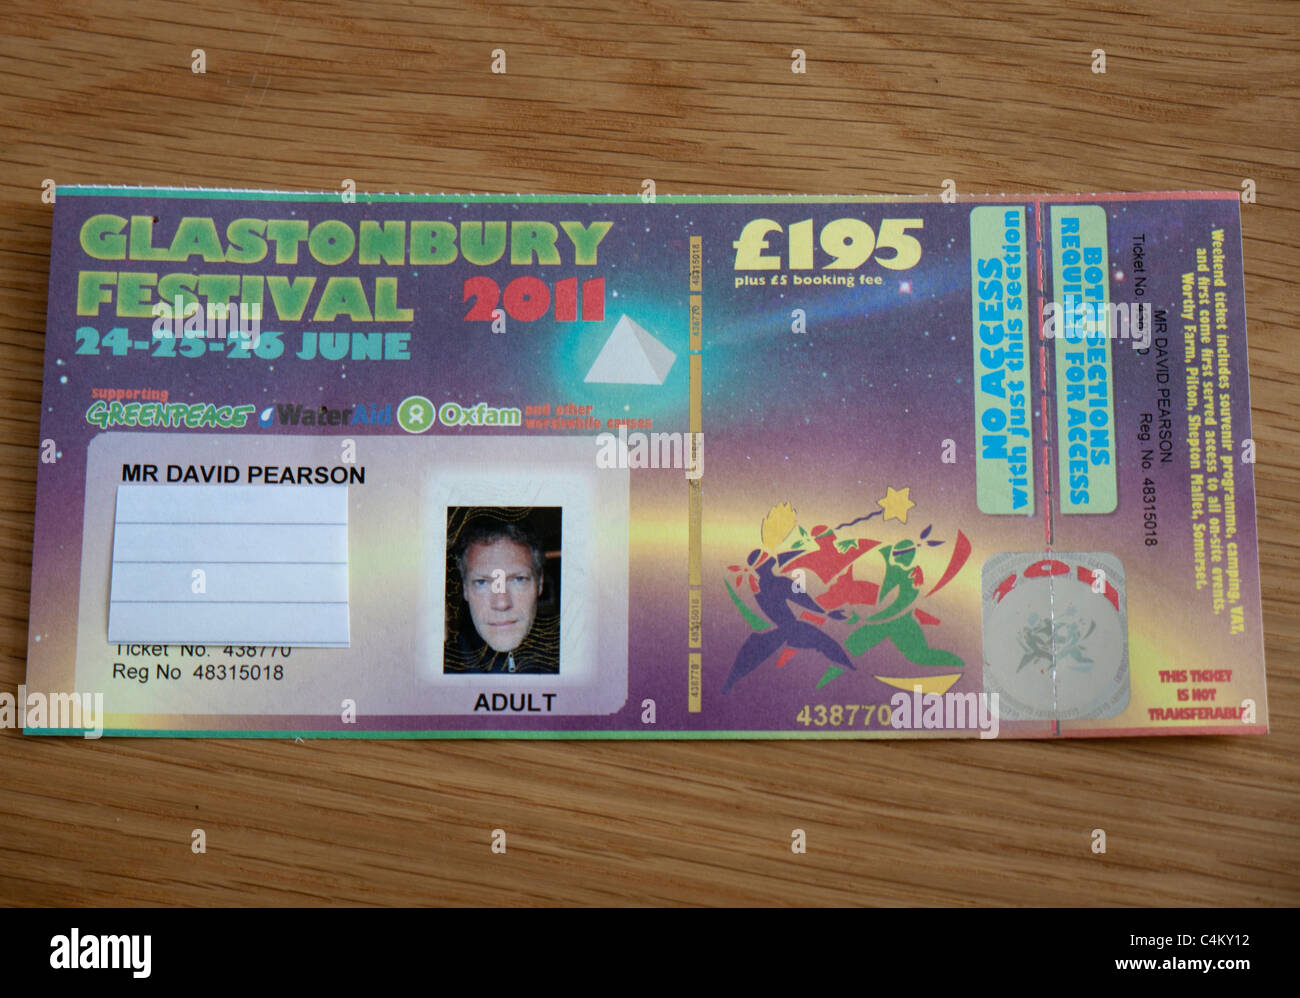 glastonbury-festival-ticket-C4KY12.jpg